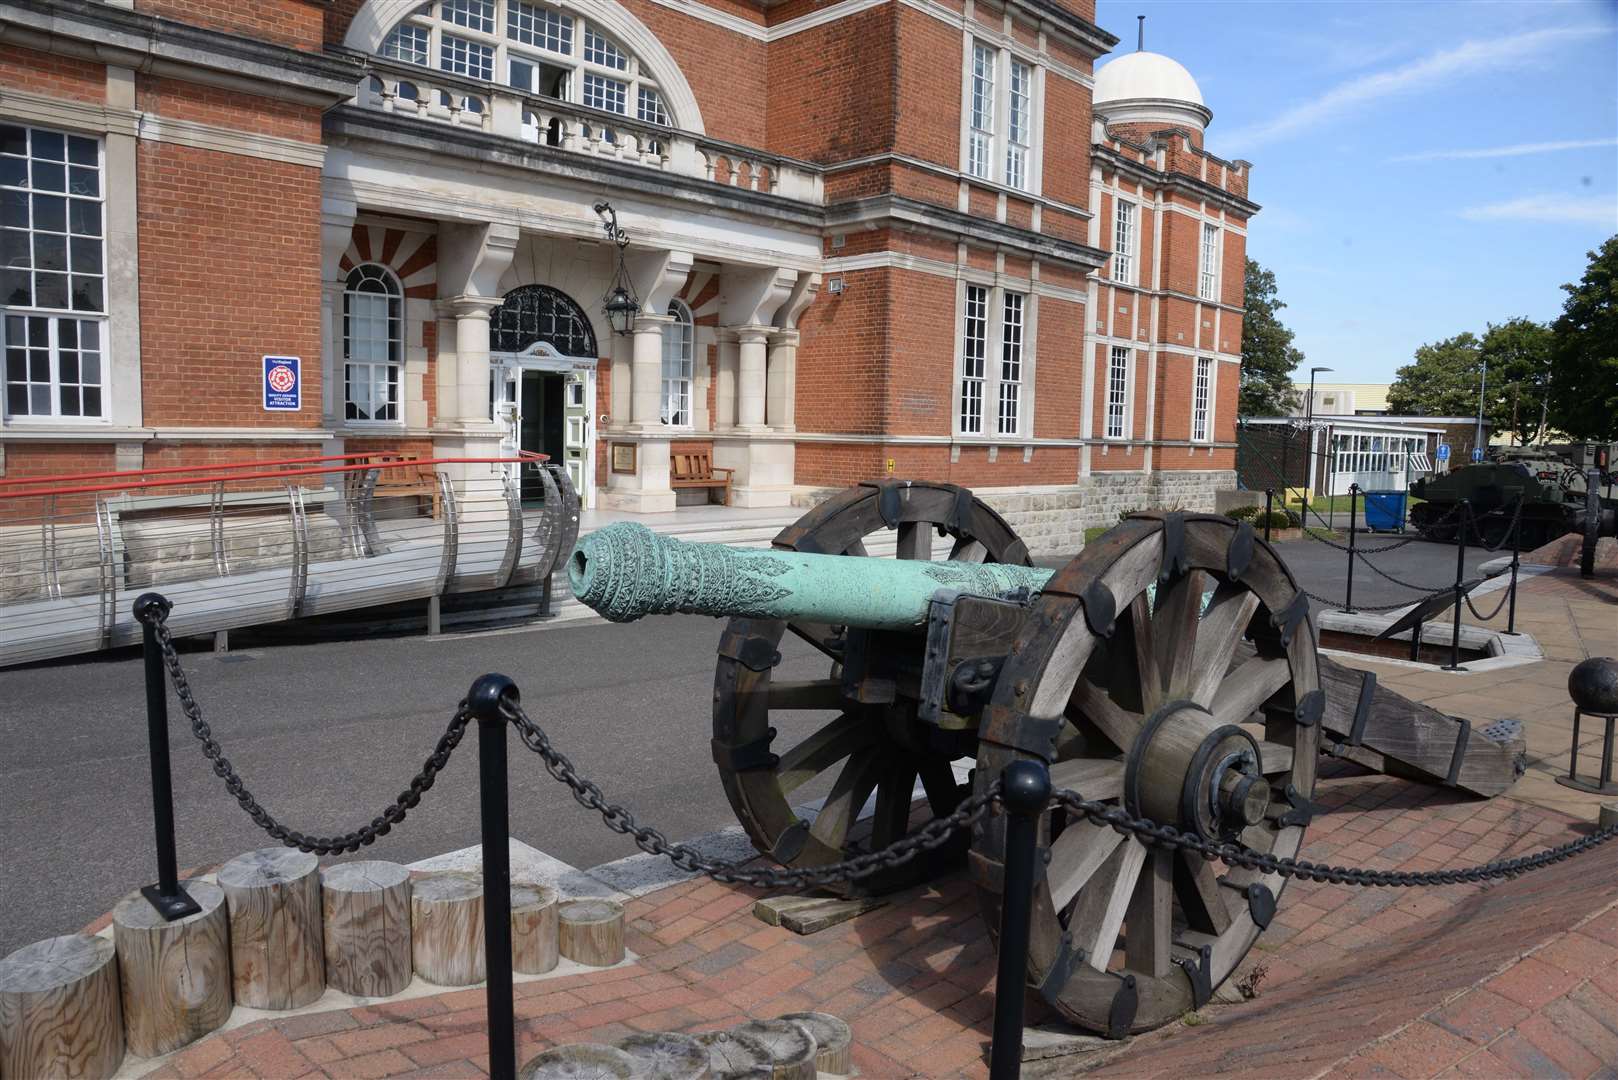 Royal Engineers Museum, Gillingham is reopening